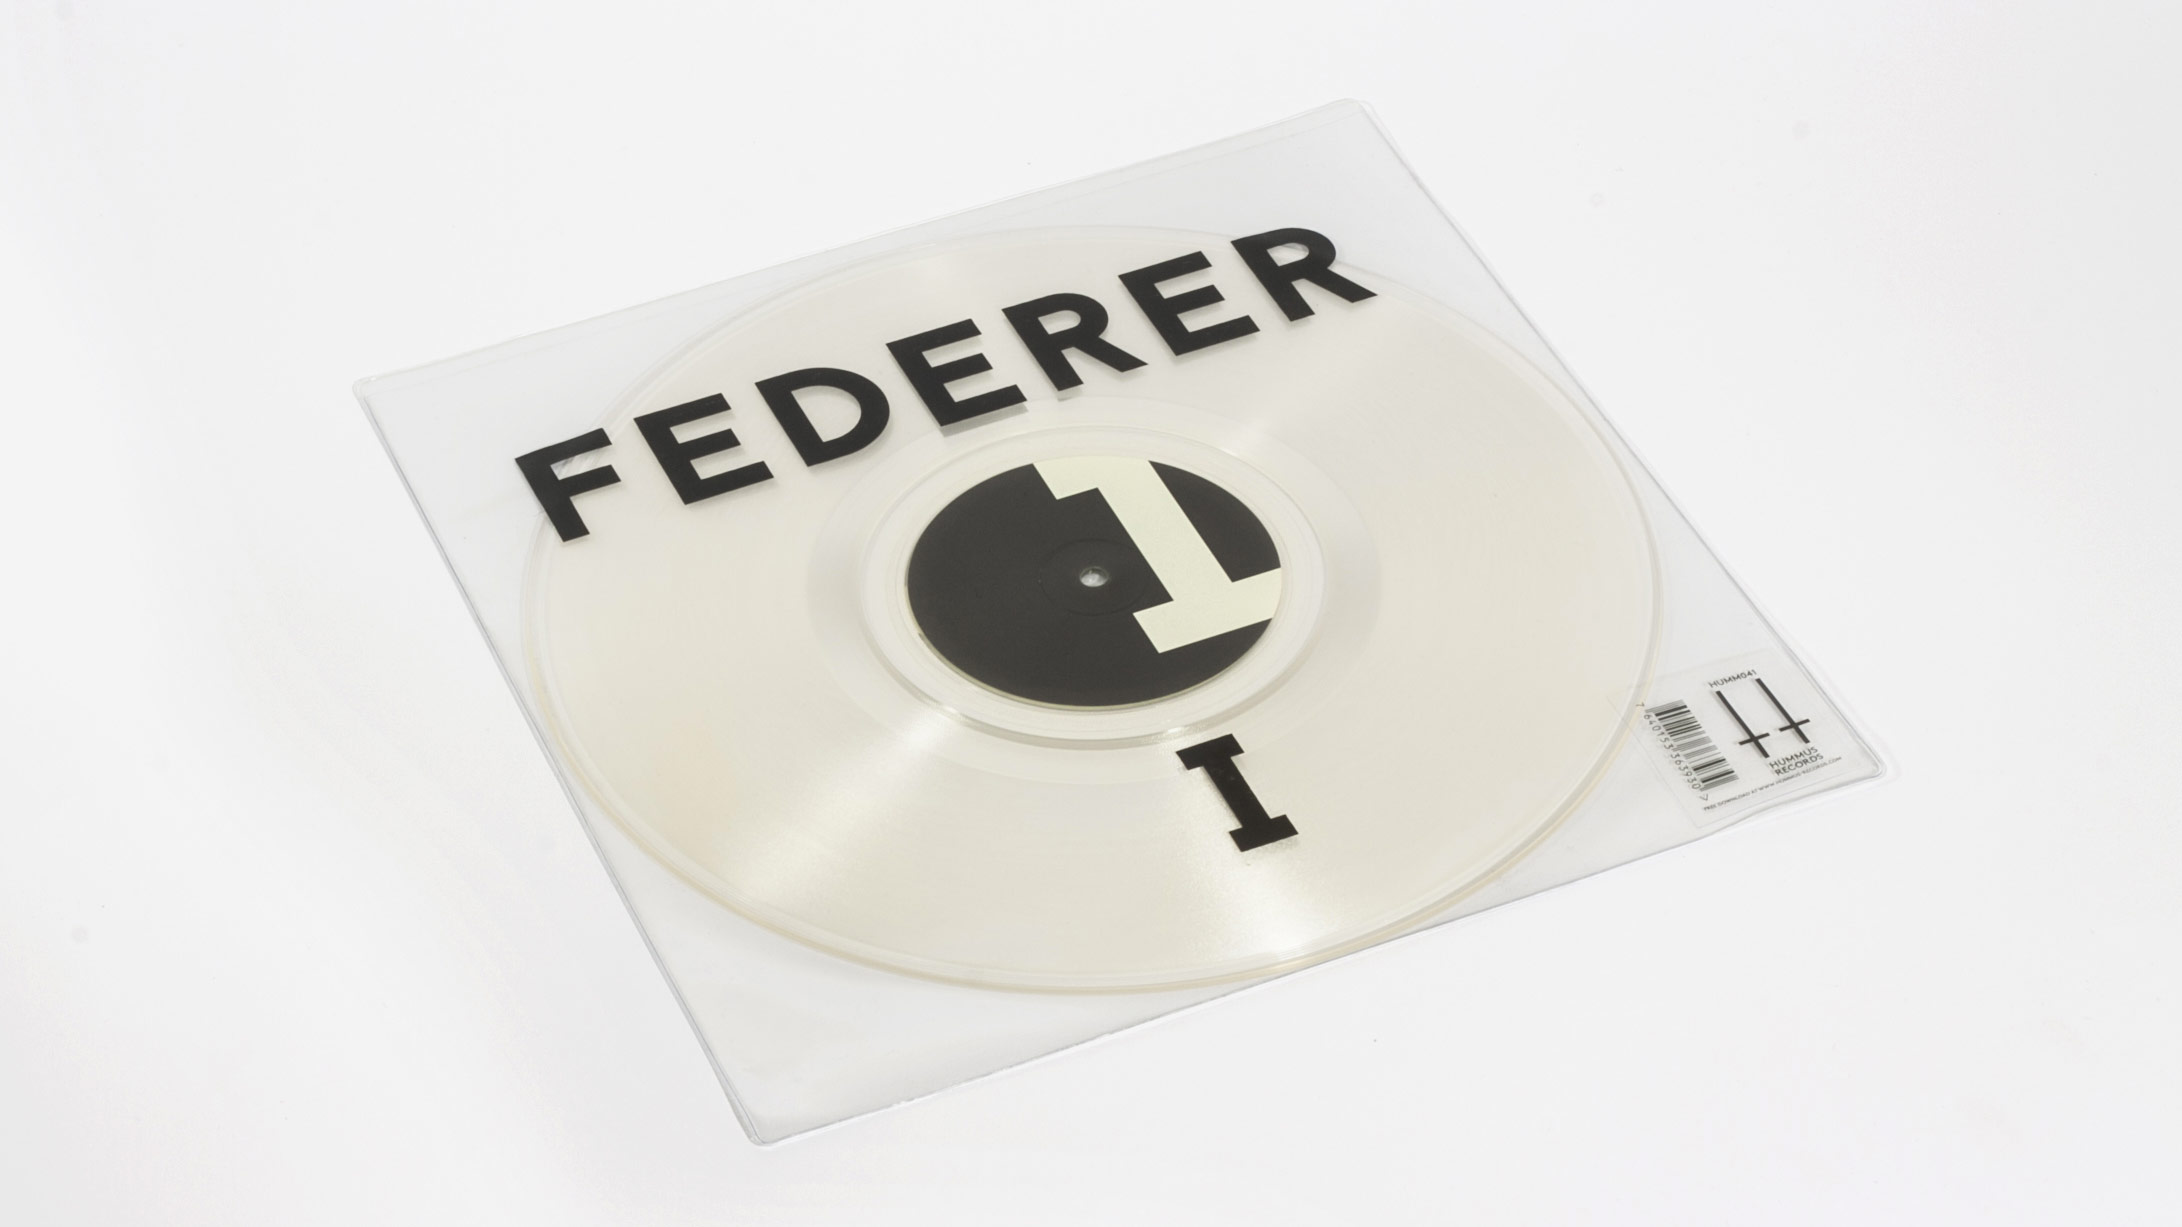 Projet Federer